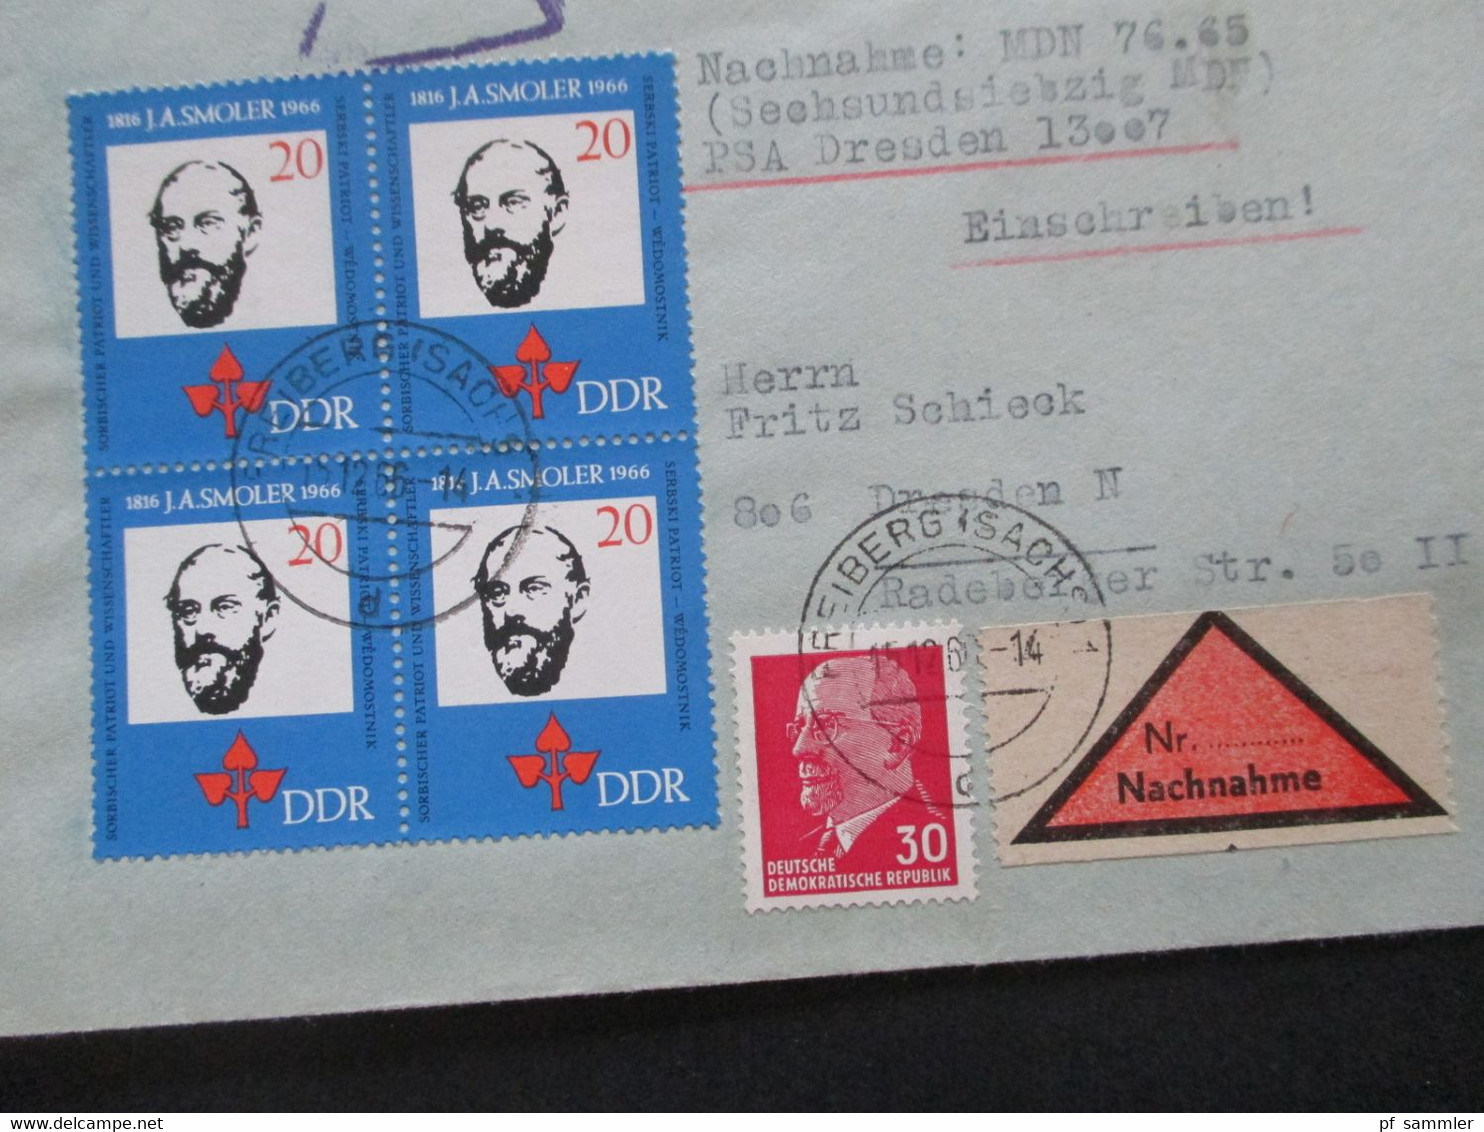 DDR 1960 / 70er Jahre Insgesamt 14 Belege / Nachnahme / Einschreiben! Schöne Frankaturen / Auch Einheiten! - Lettres & Documents